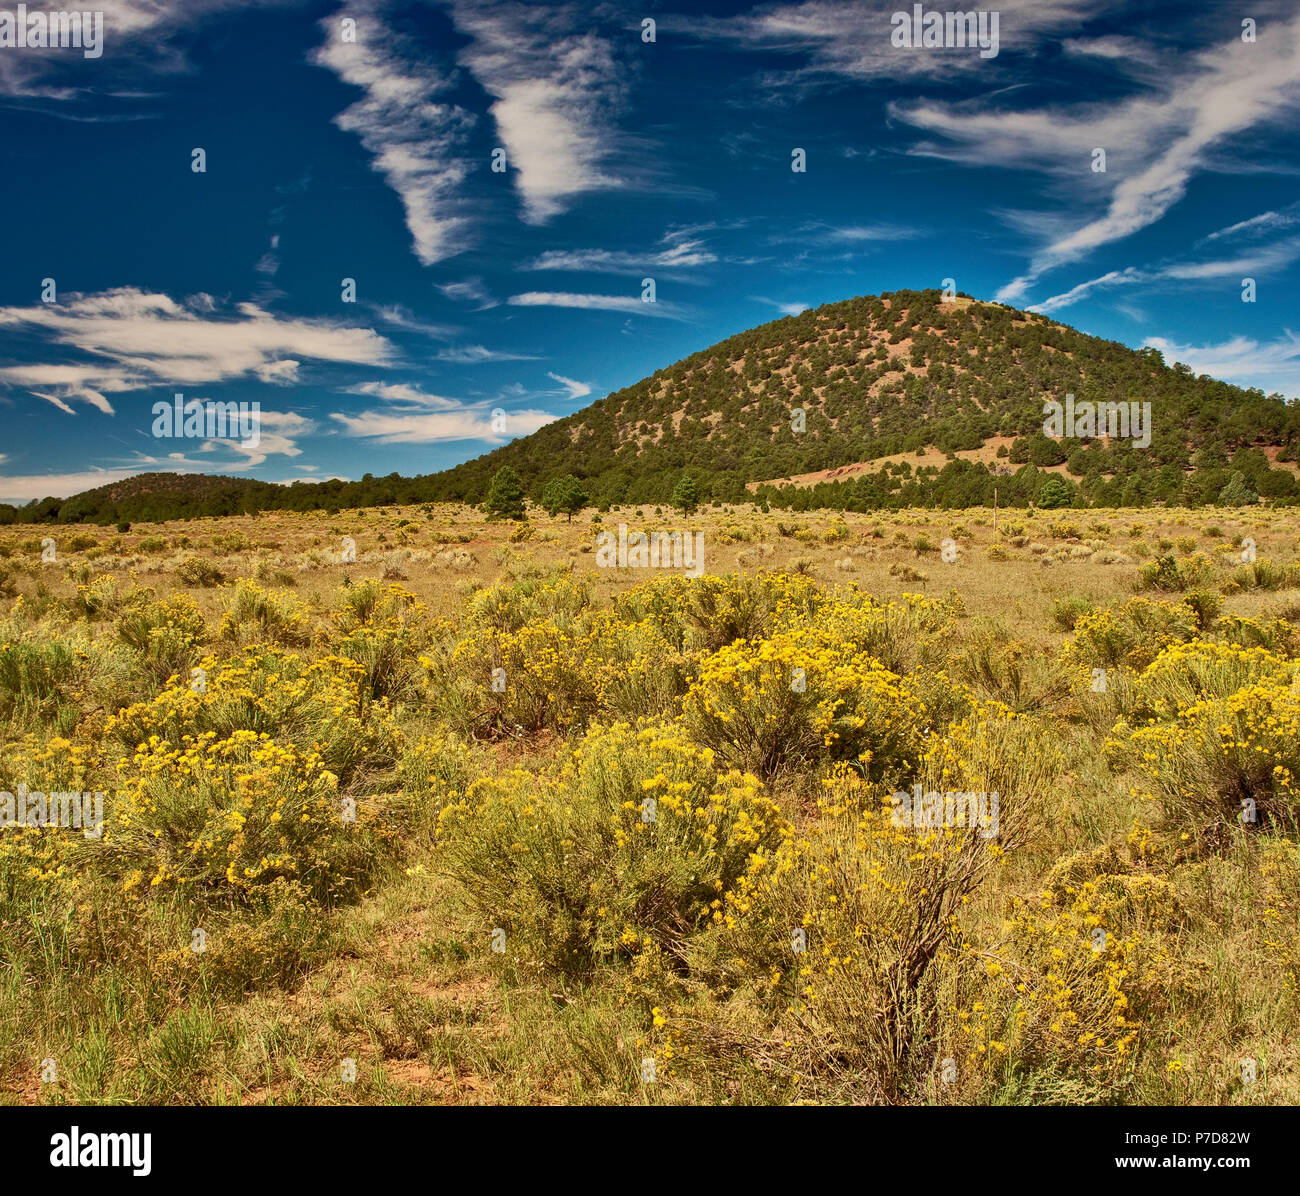 Cerro Americano cinder cone volcano, field of rabbitbush, Chain of Craters Road,  El Malpais National Monument, New Mexico, USA Stock Photo